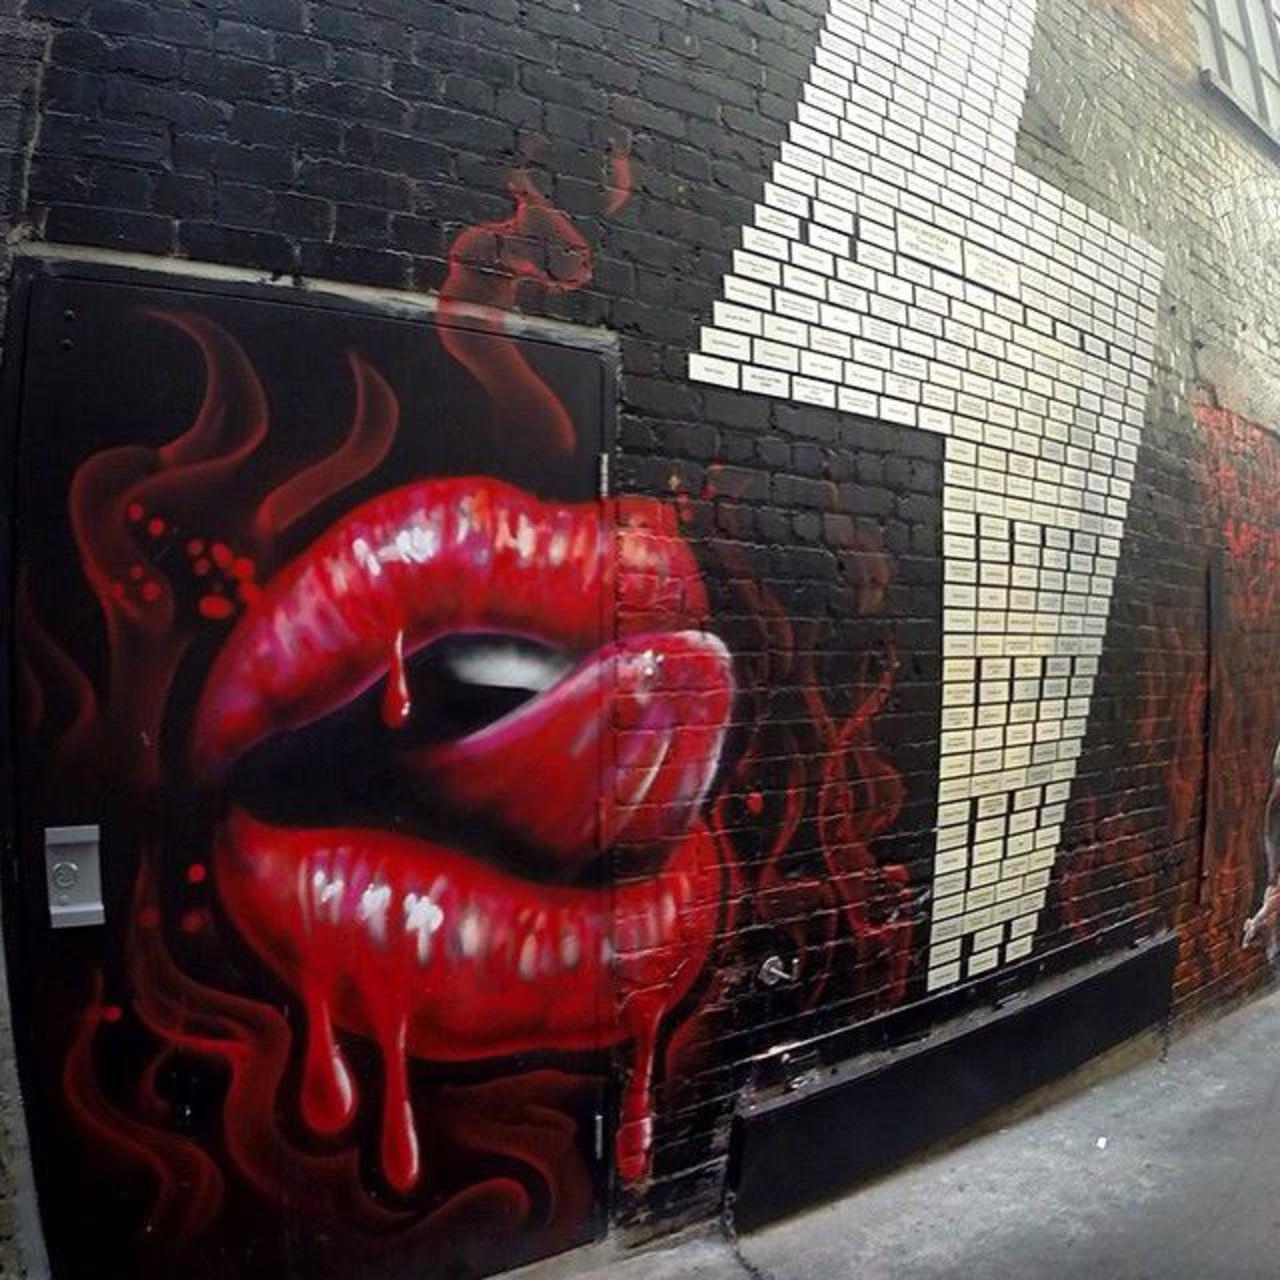 Latest Street Art by MikeMaka 

#art #arte #graffiti #streetart http://t.co/s5VVntwpsb